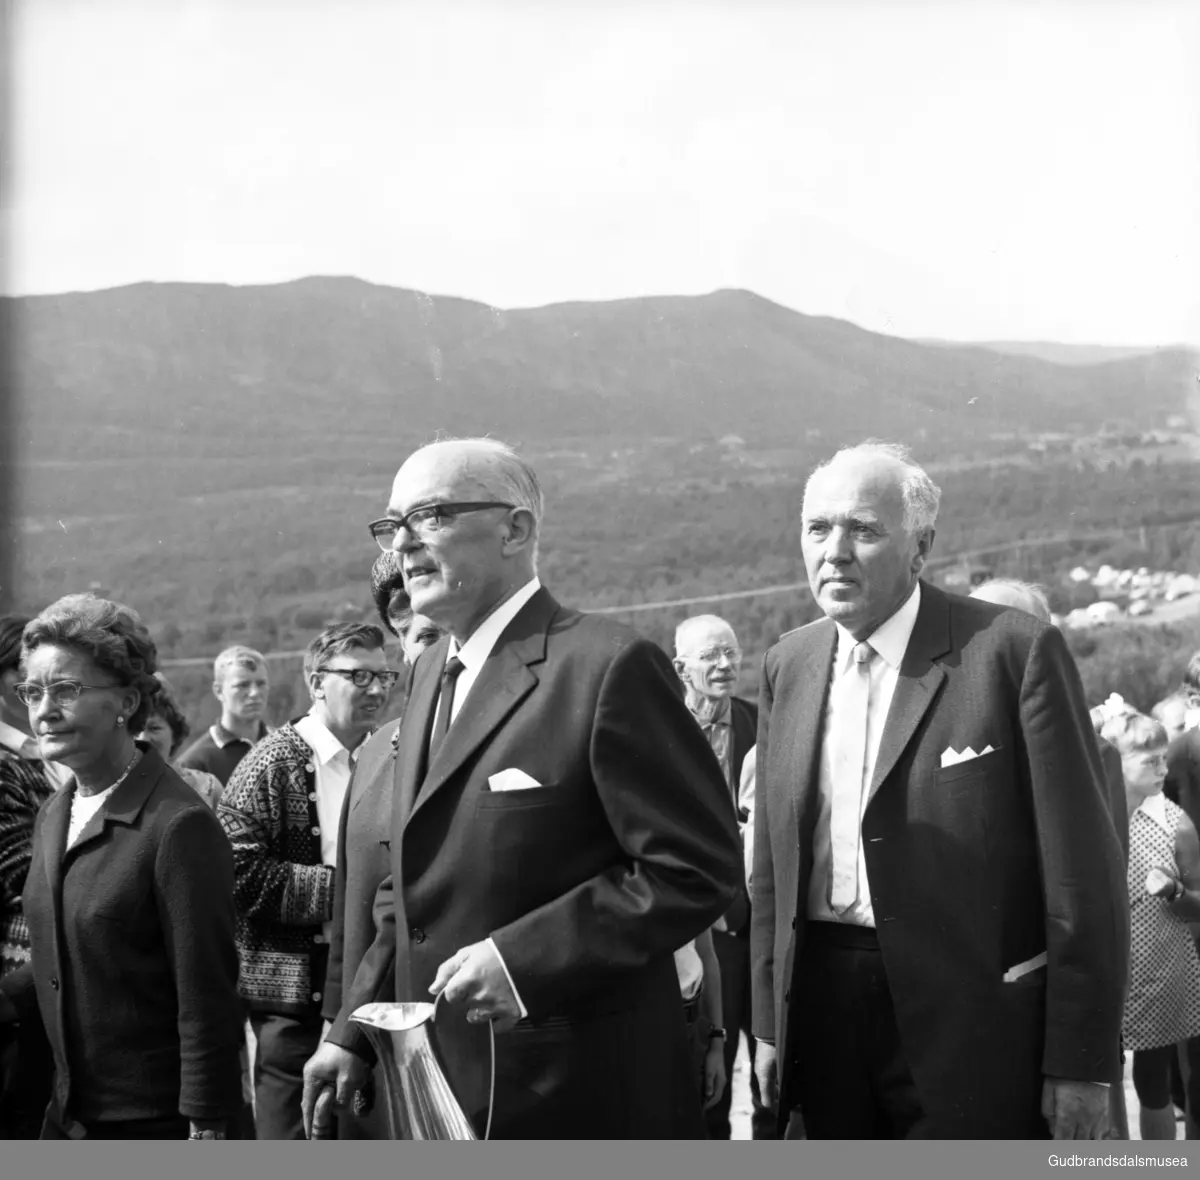 Frå vigslinga av Eysteinskyrkja på Hjerkinn 3. august 1969. Leiv Løvold, direktør ved Tverrfjellet gruver på Hjerkinn og Kjell Bondevik, kirke- og undervisningsminister.